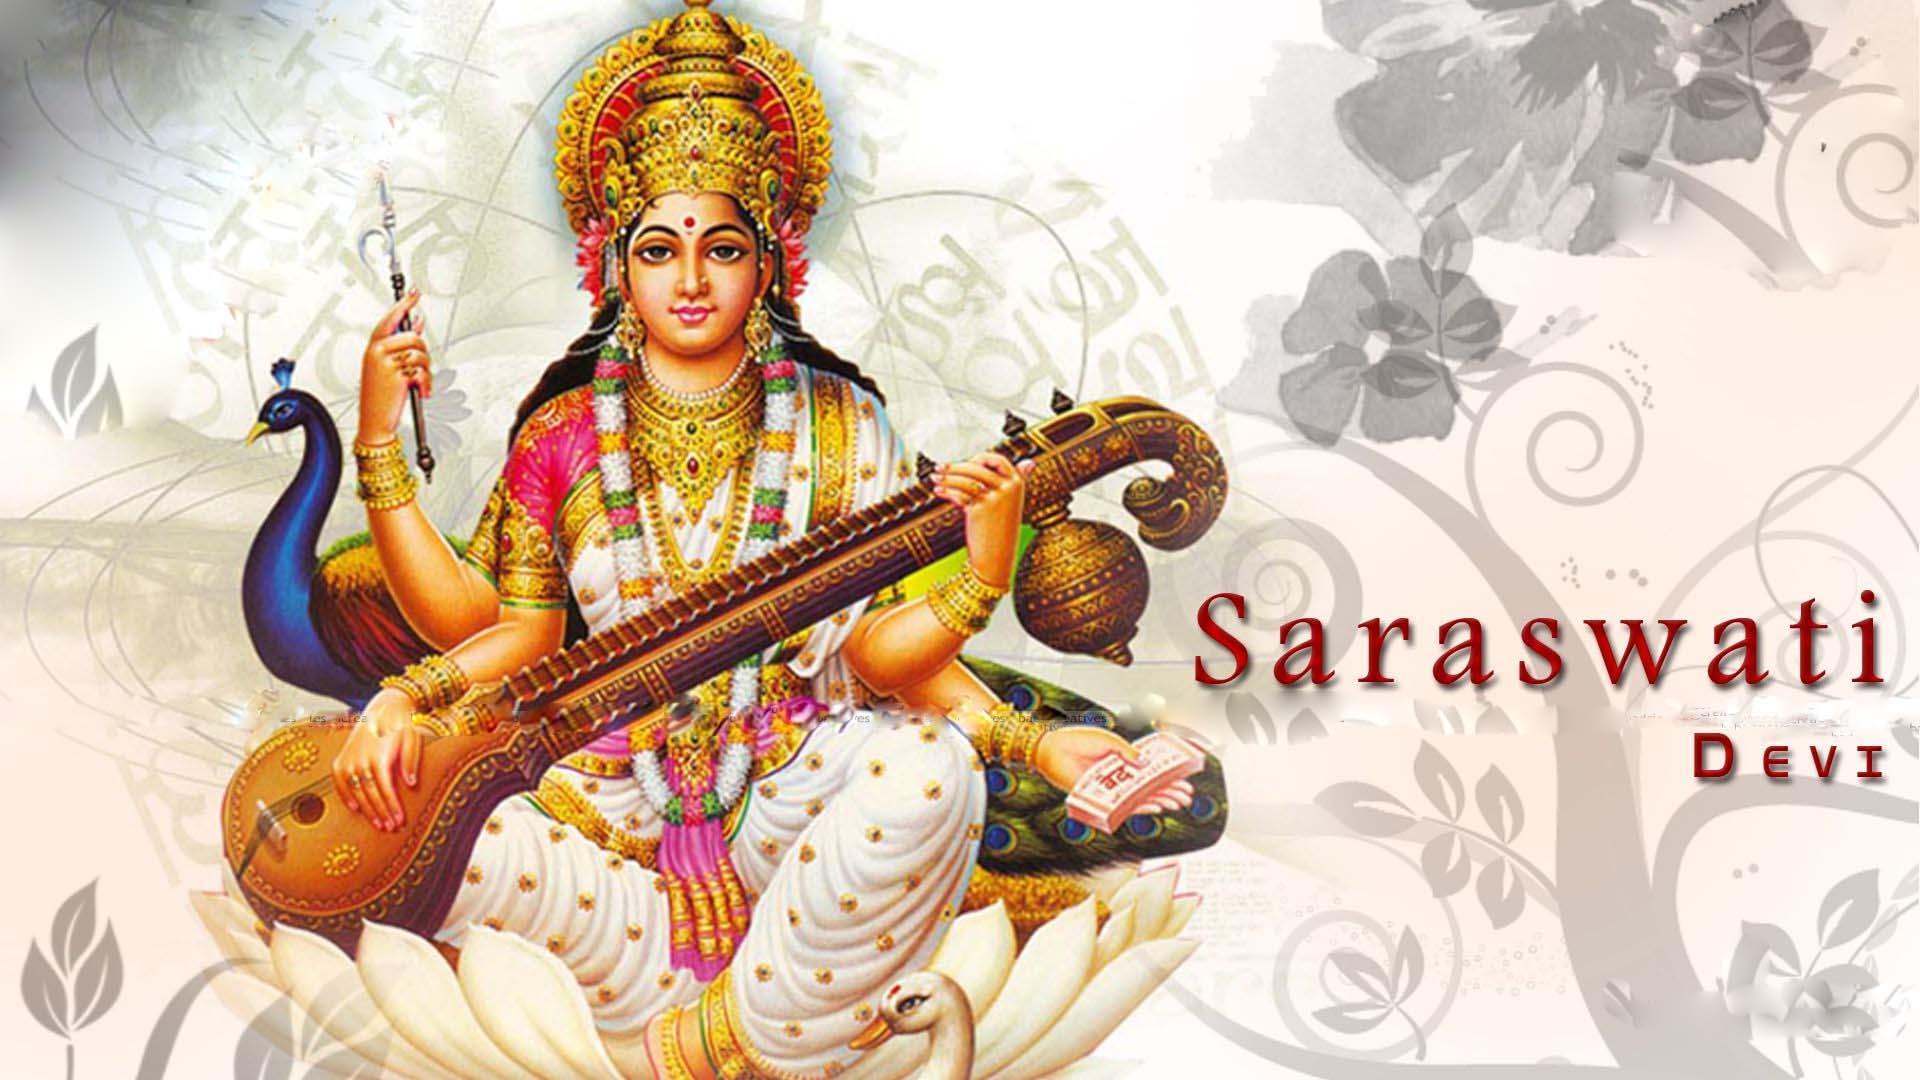 Saraswathi Image Download. Hindu Gods and Goddesses